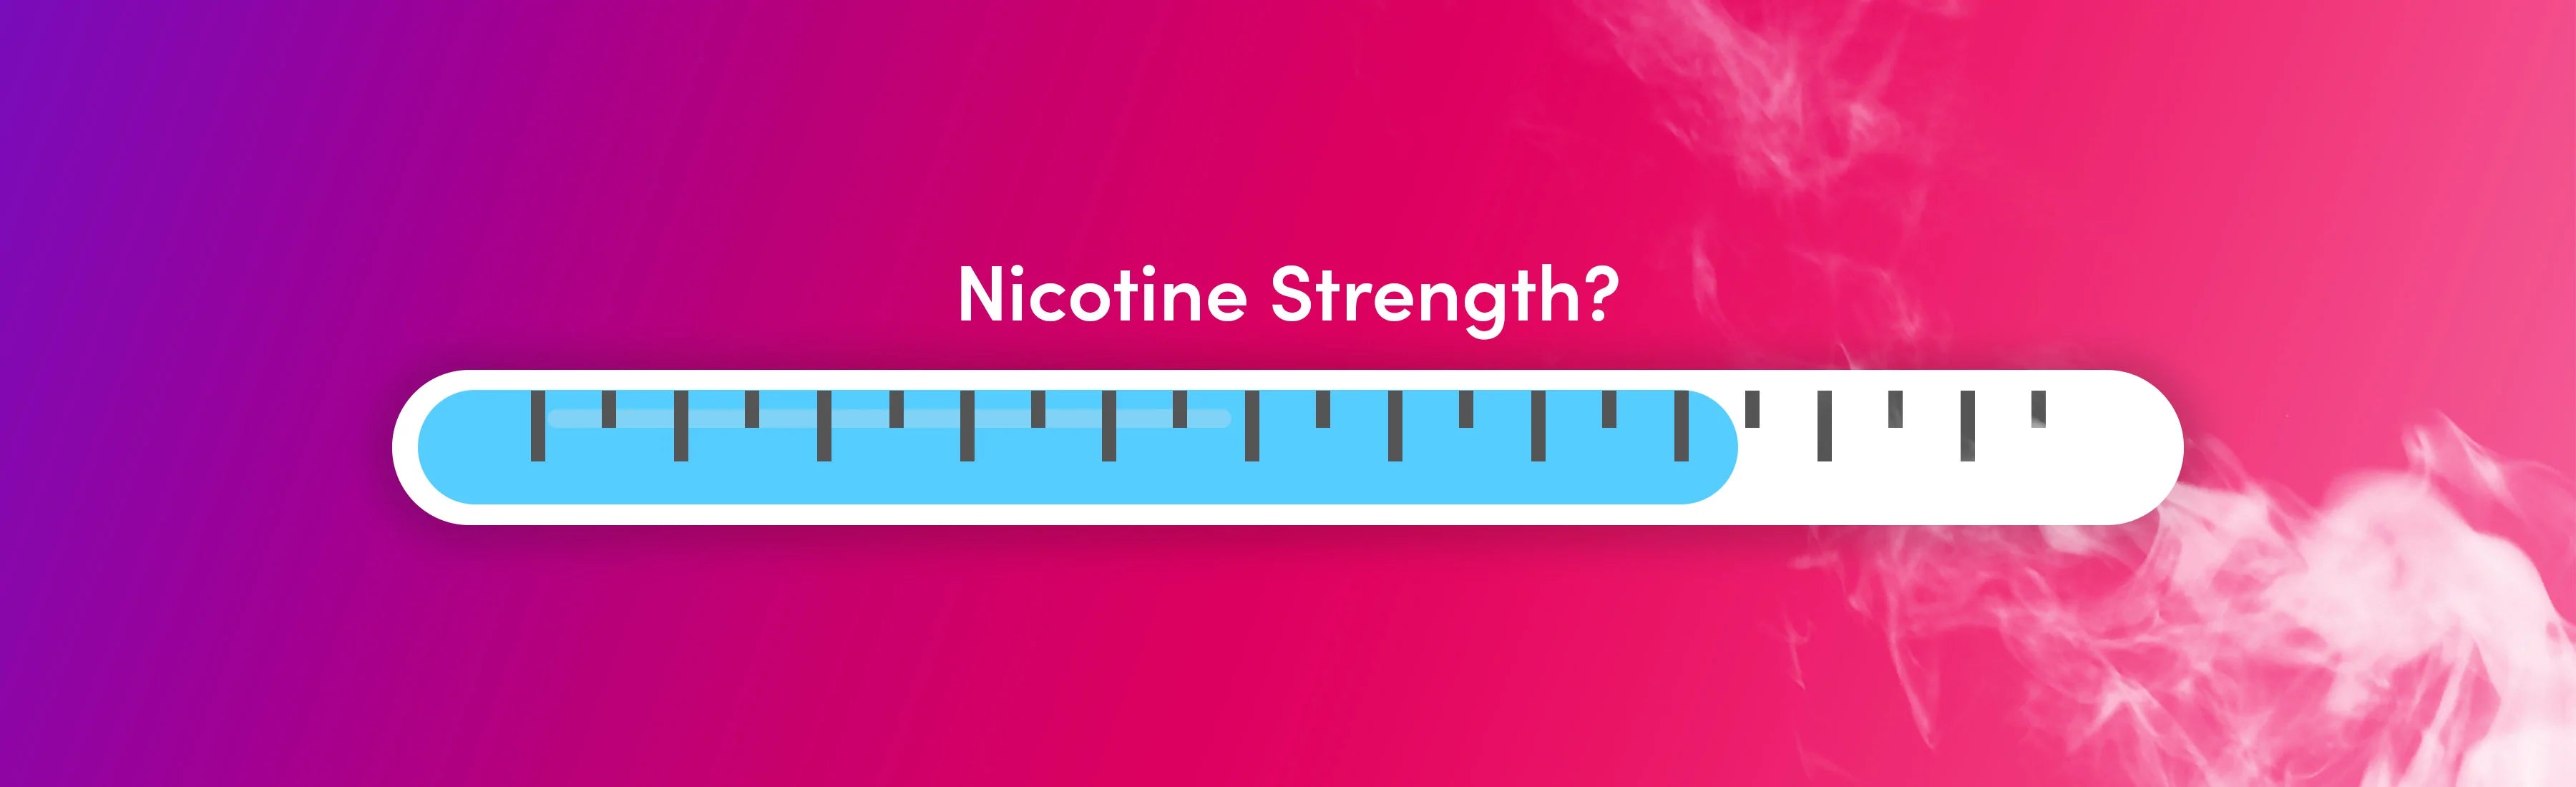 eliquid nicotine strength